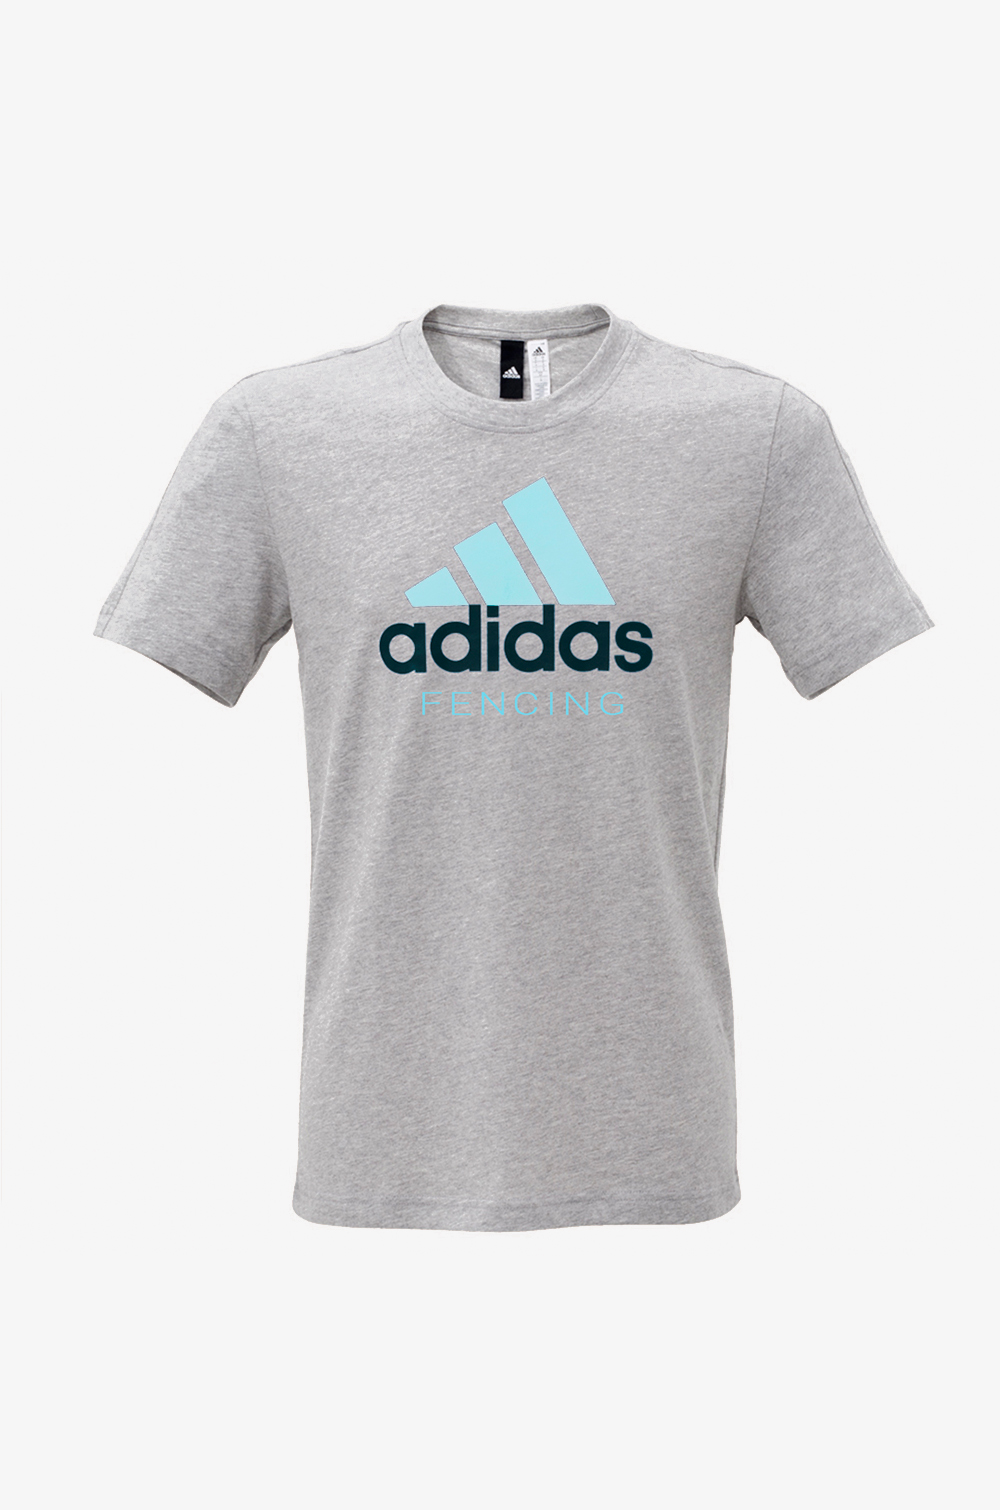 adidas T-Shirt Men (light blue)